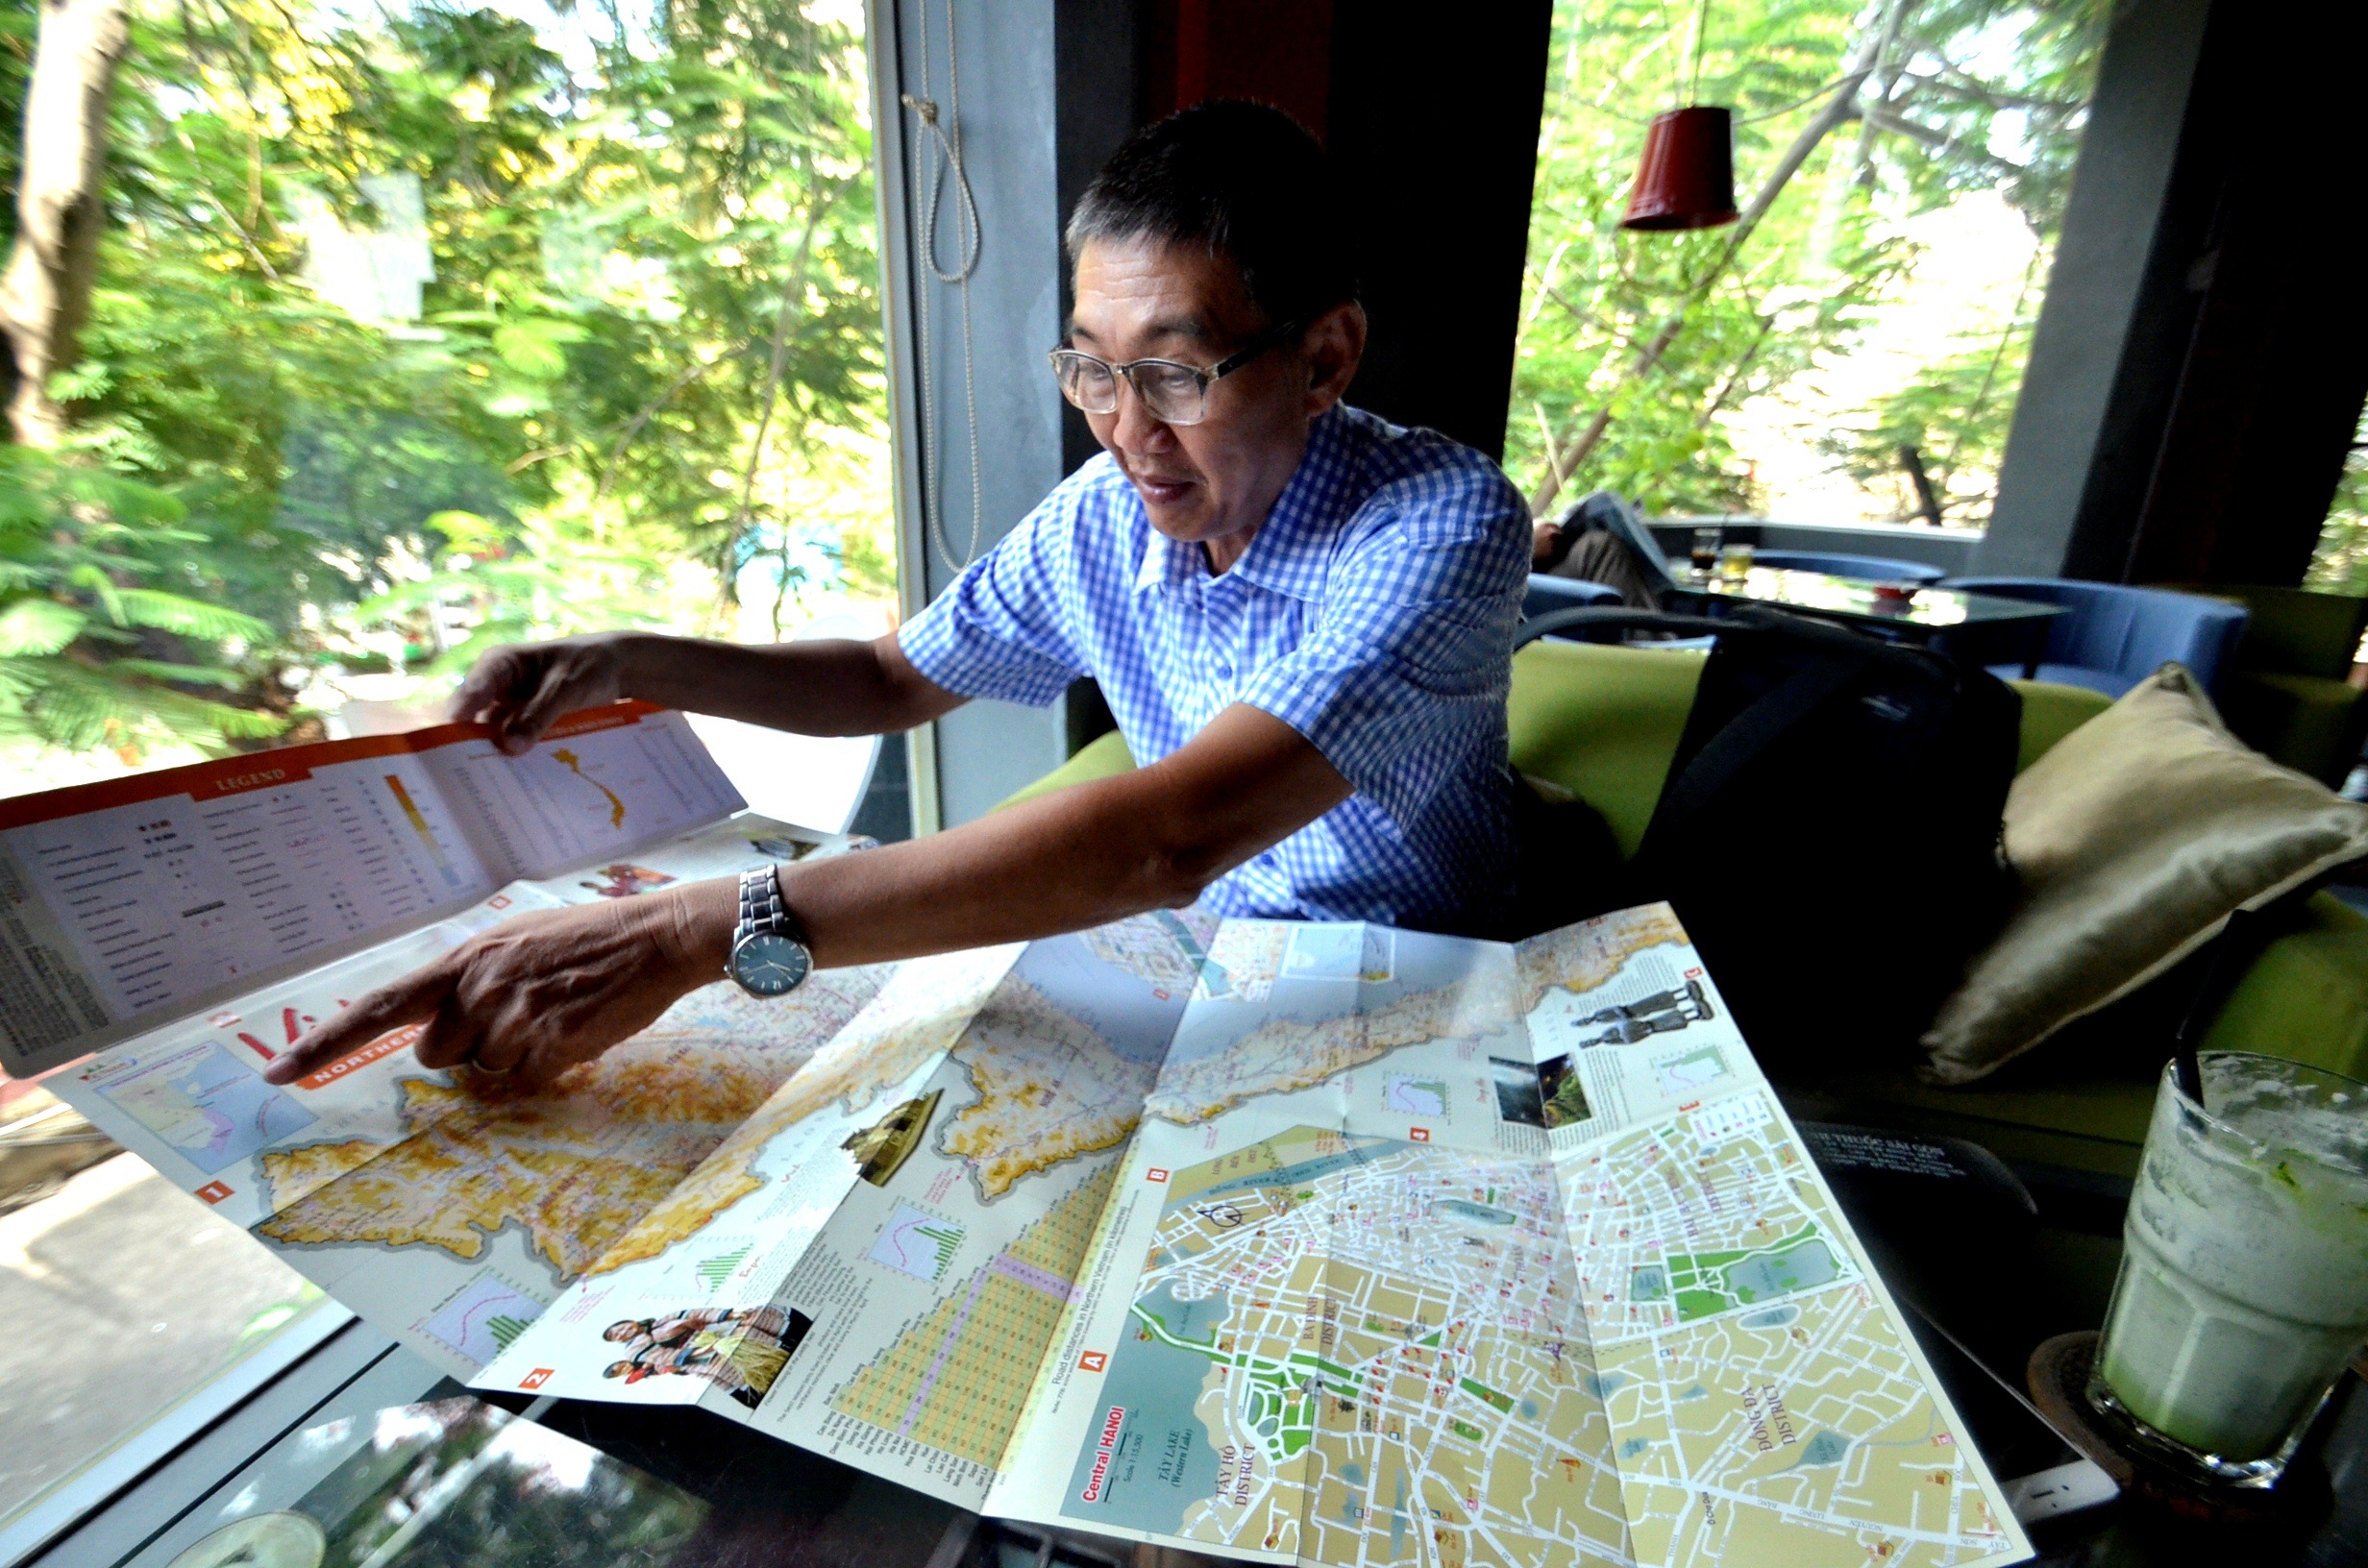 Nếu bạn đang có kế hoạch đến Việt Nam trong năm nay, đừng bỏ lỡ bản đồ du lịch mới nhất của năm 2024! Với nhiều tính năng mới, bản đồ mới có thể giúp bạn tìm kiếm những chuyến đi đáng nhớ nhất. Khám phá và đắm mình trong vẻ đẹp của Việt Nam với bản đồ mới.